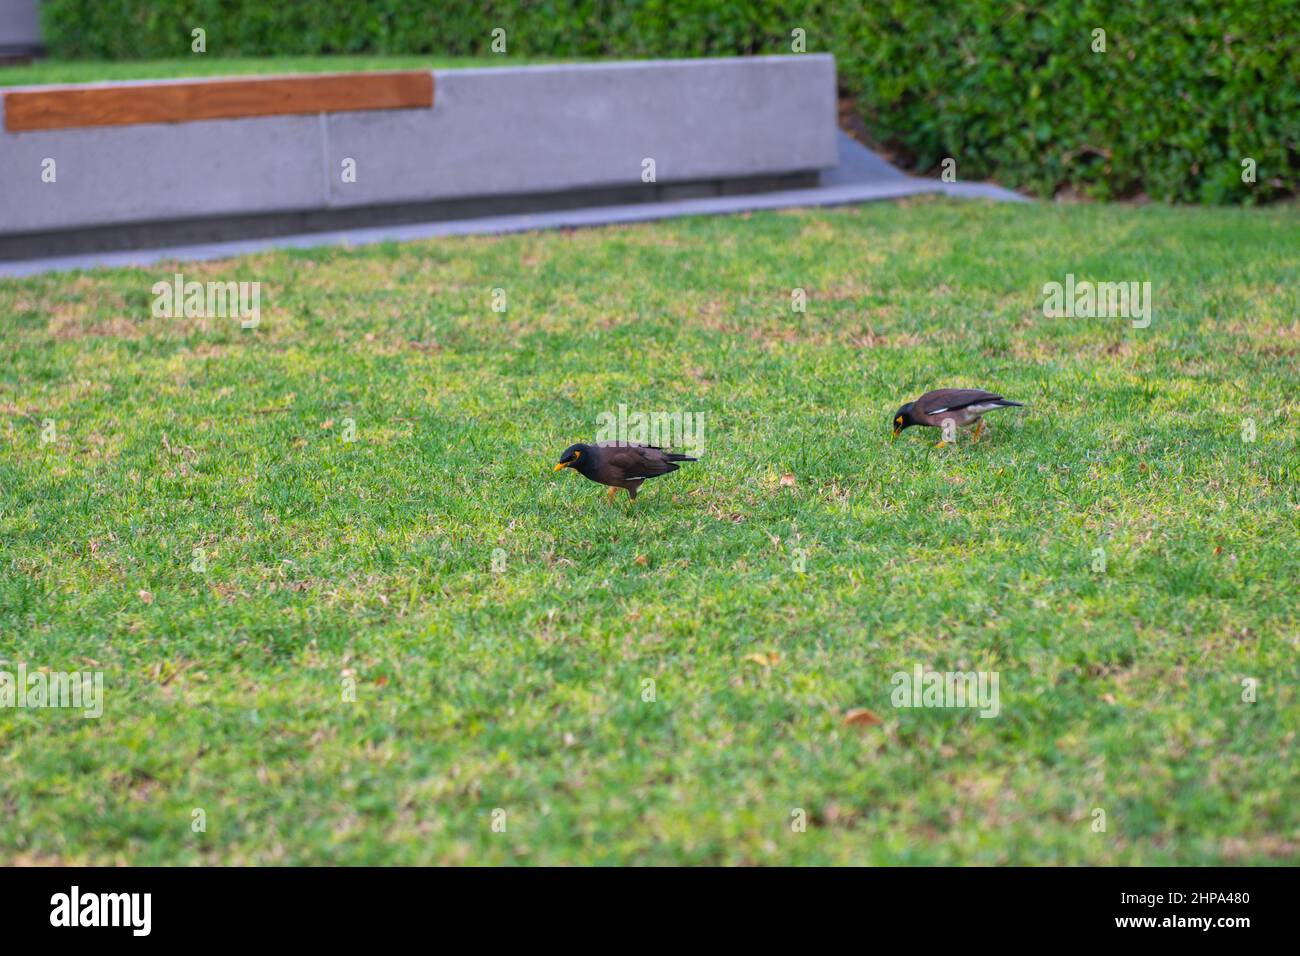 Ein paar Birdies auf einem grünen Rasen Stockfoto